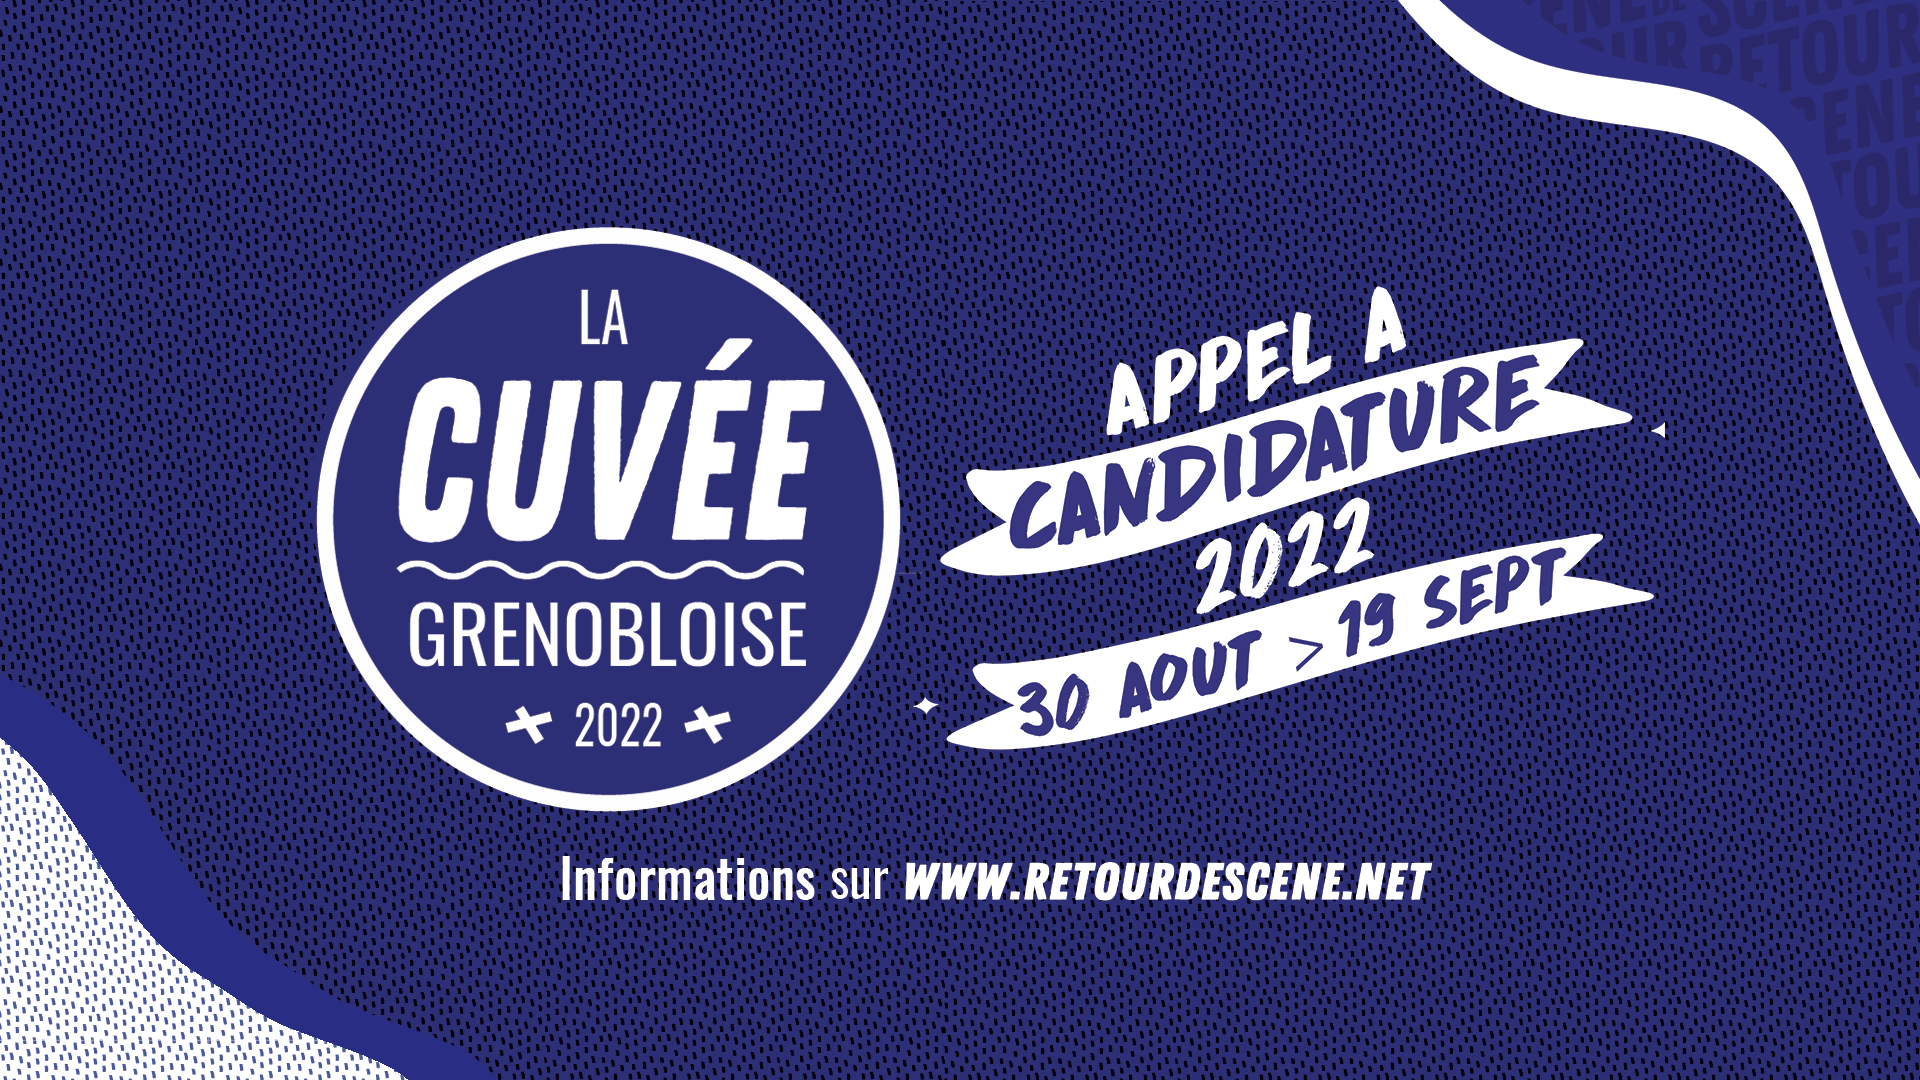 Cuvée Grenobloise 2022